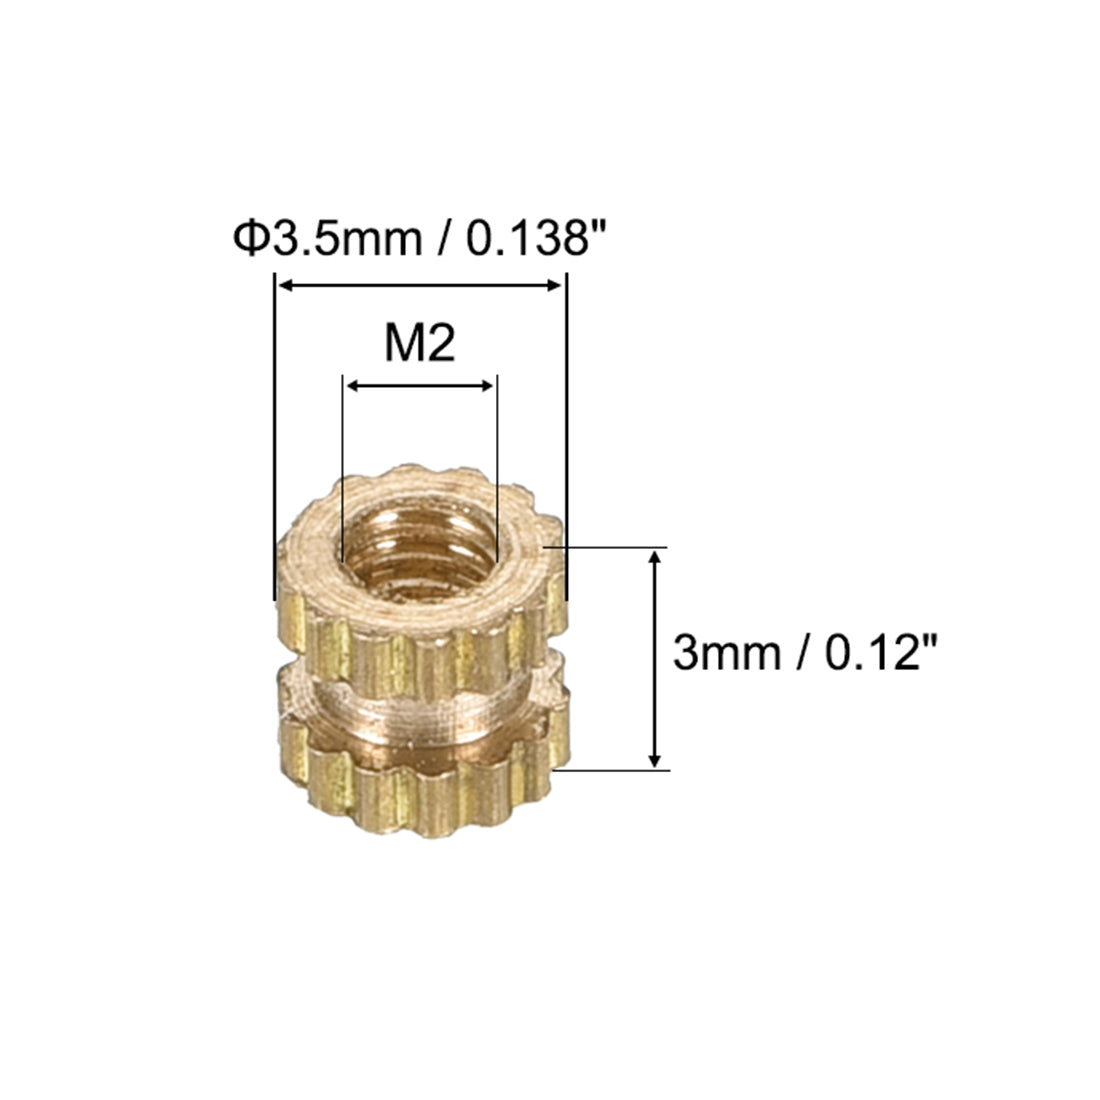 uxcell Uxcell Knurled Insert Nuts, M2 x 3mm(L) x 3.5mm(OD) Female Thread Brass Embedment Assortment Kit, 50 Pcs